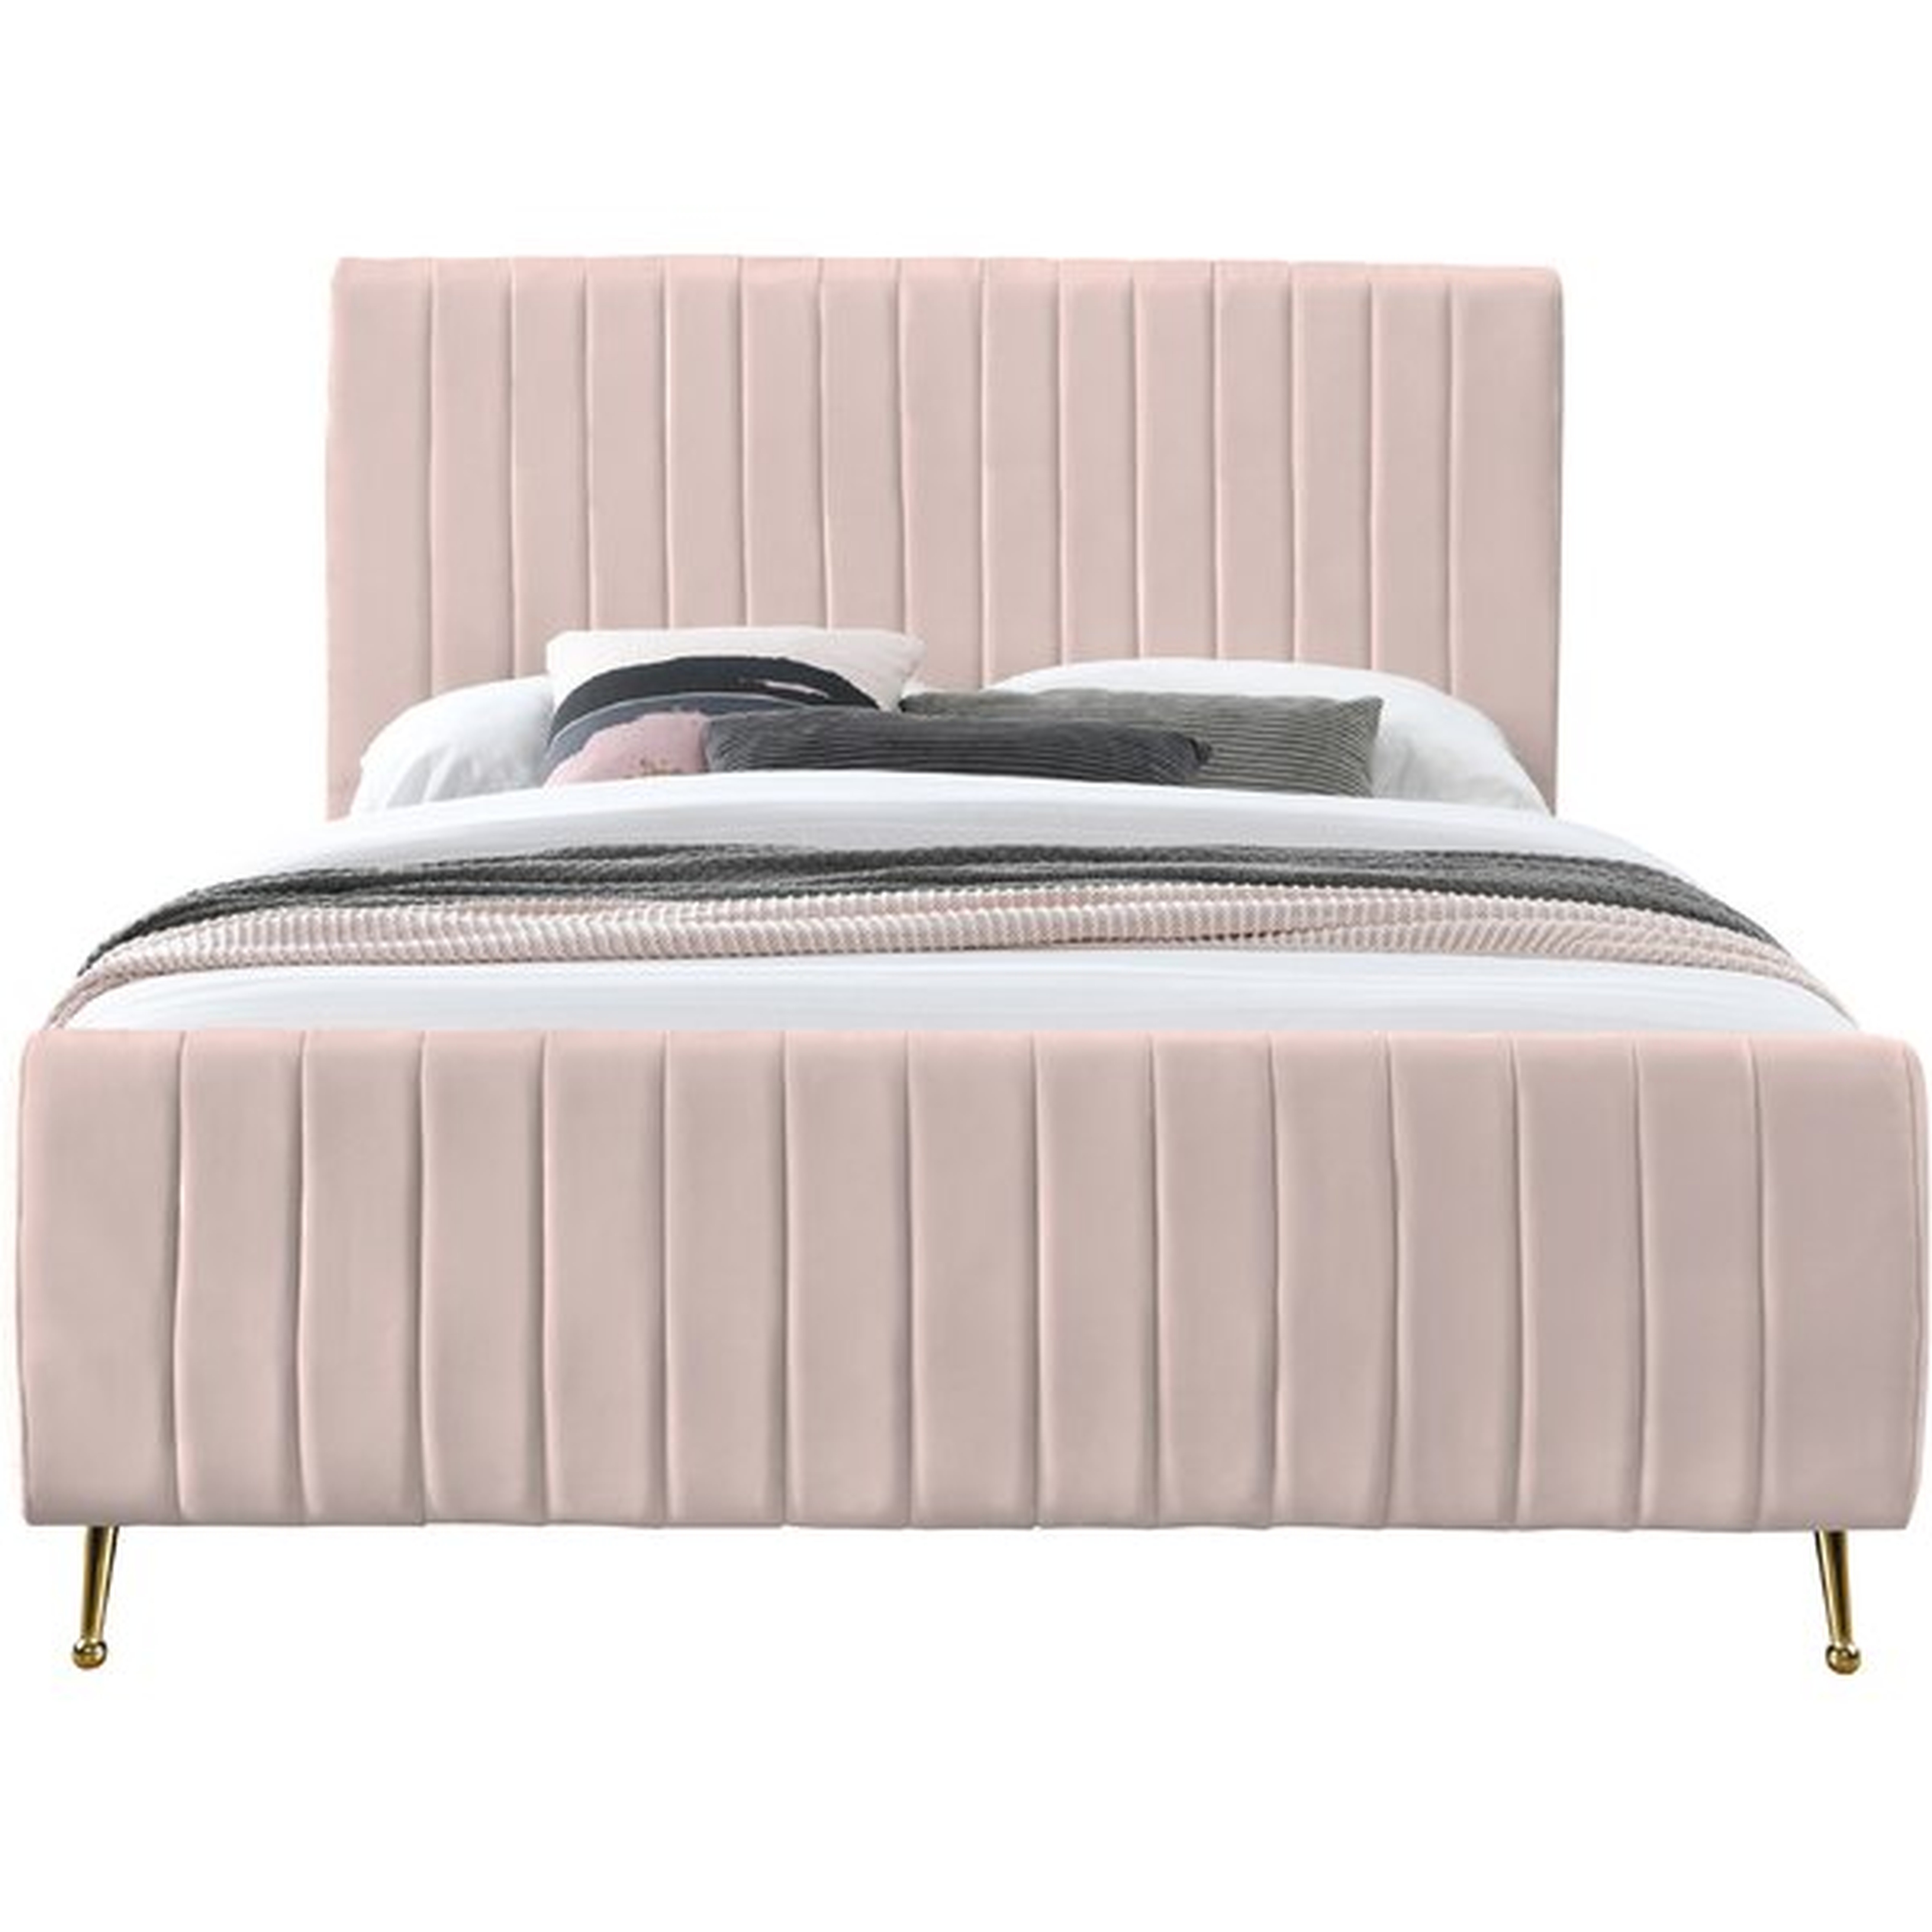 Summersville Tufted Upholstered Low Profile Platform Bed - Wayfair